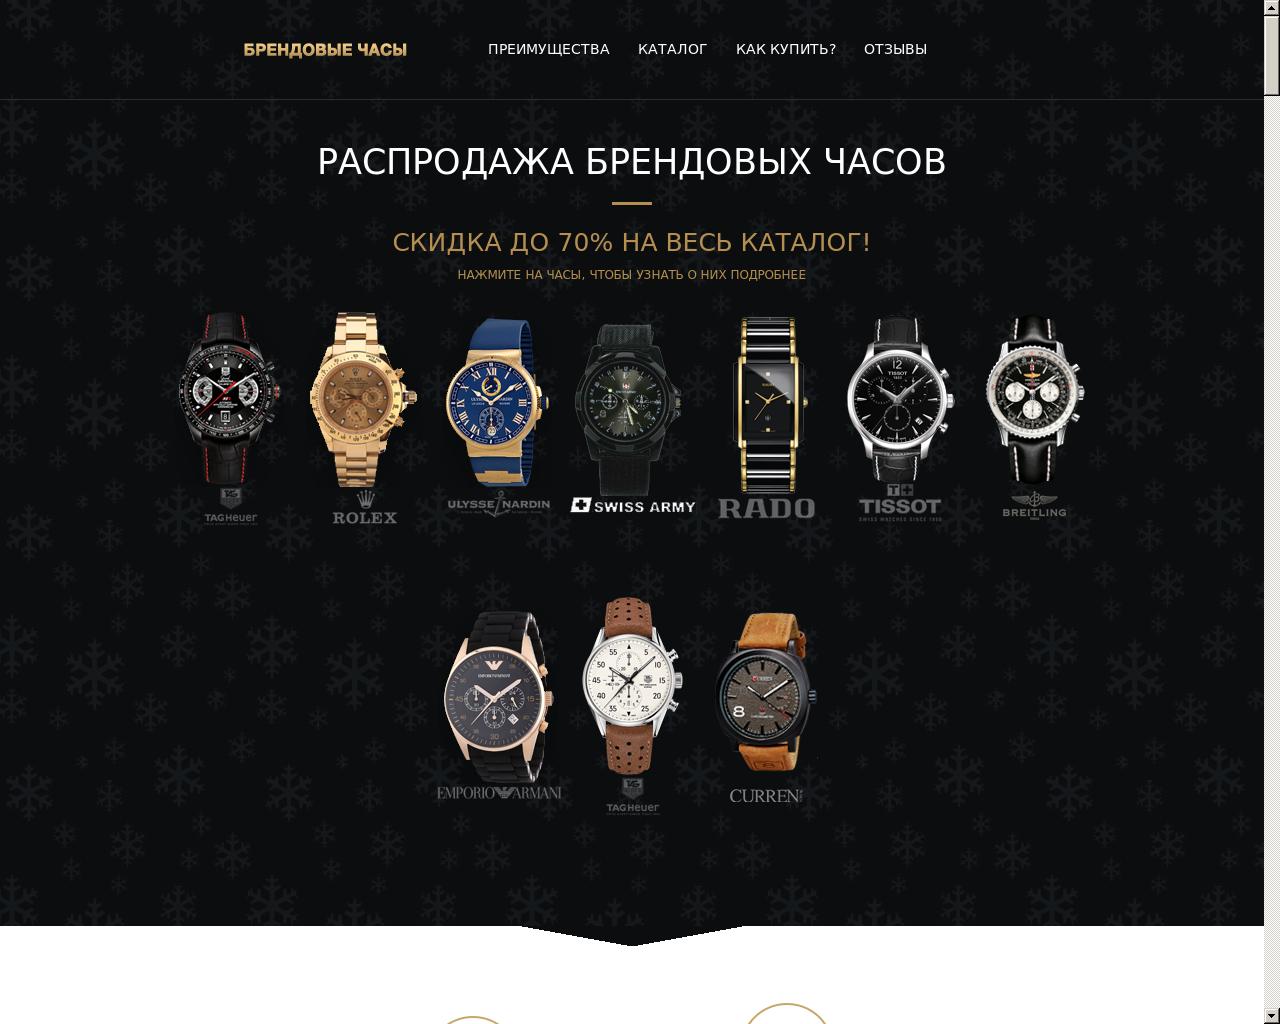 Изображение сайта novis-electronics.ru в разрешении 1280x1024